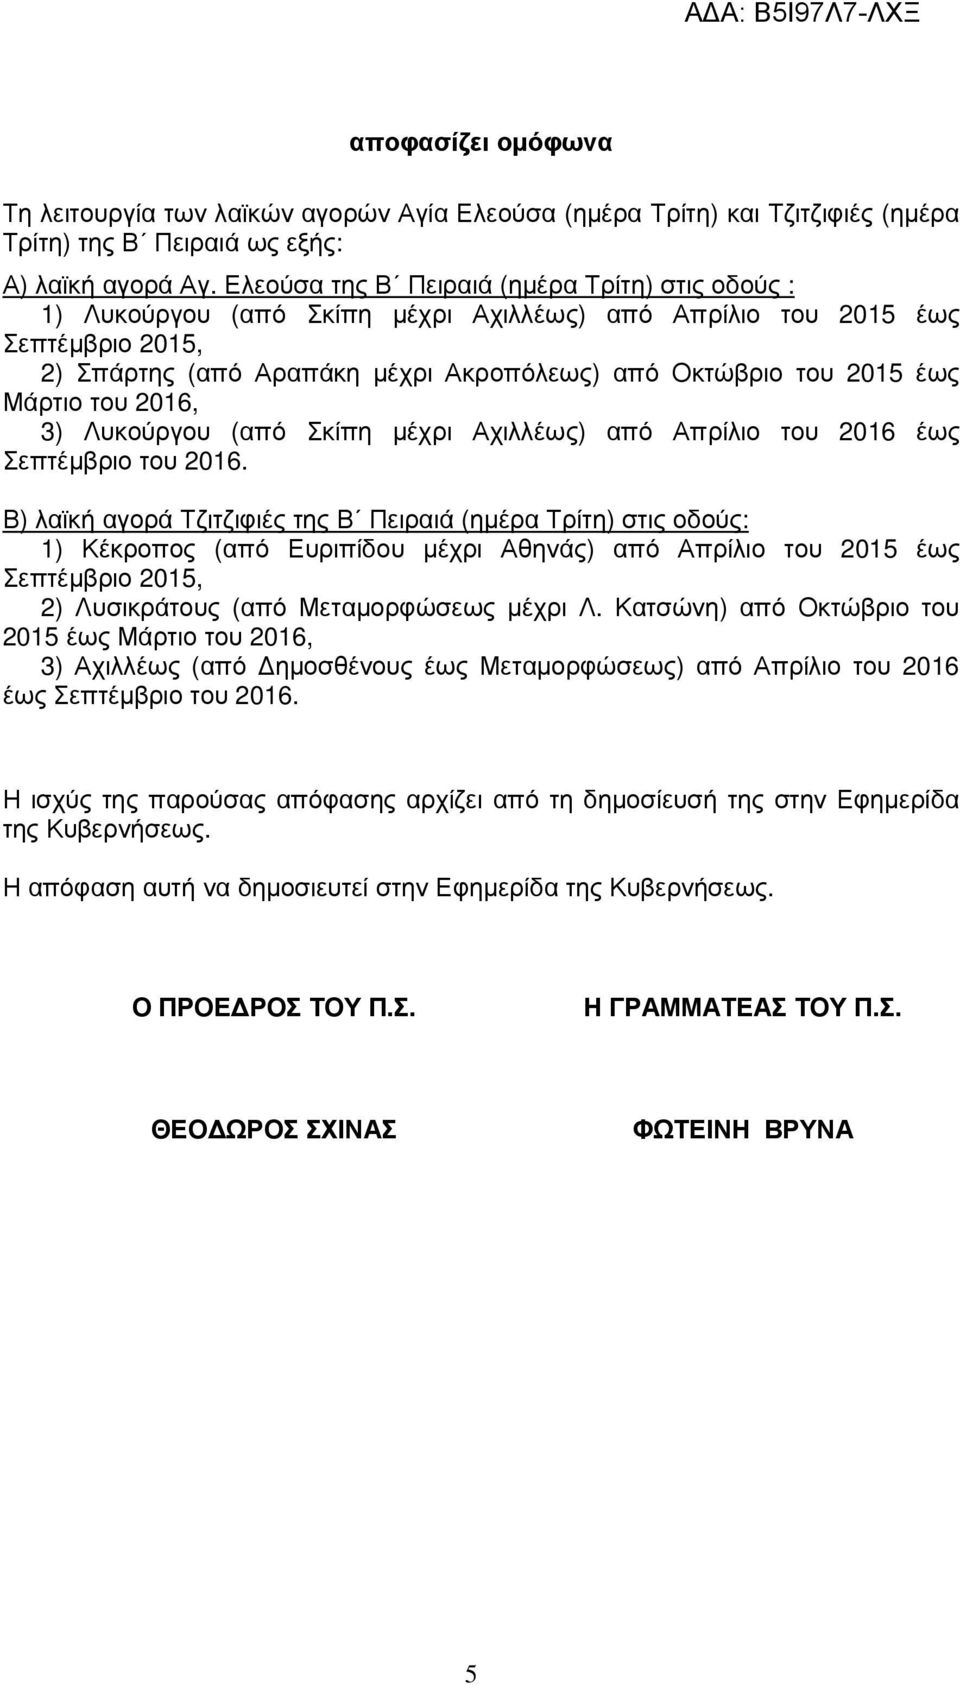 1) Κέκροπος (από Ευριπίδου µέχρι Αθηνάς) από Απρίλιο του 2015 έως Σεπτέµβριο 2015, 2) Λυσικράτους (από Μεταµορφώσεως µέχρι Λ.